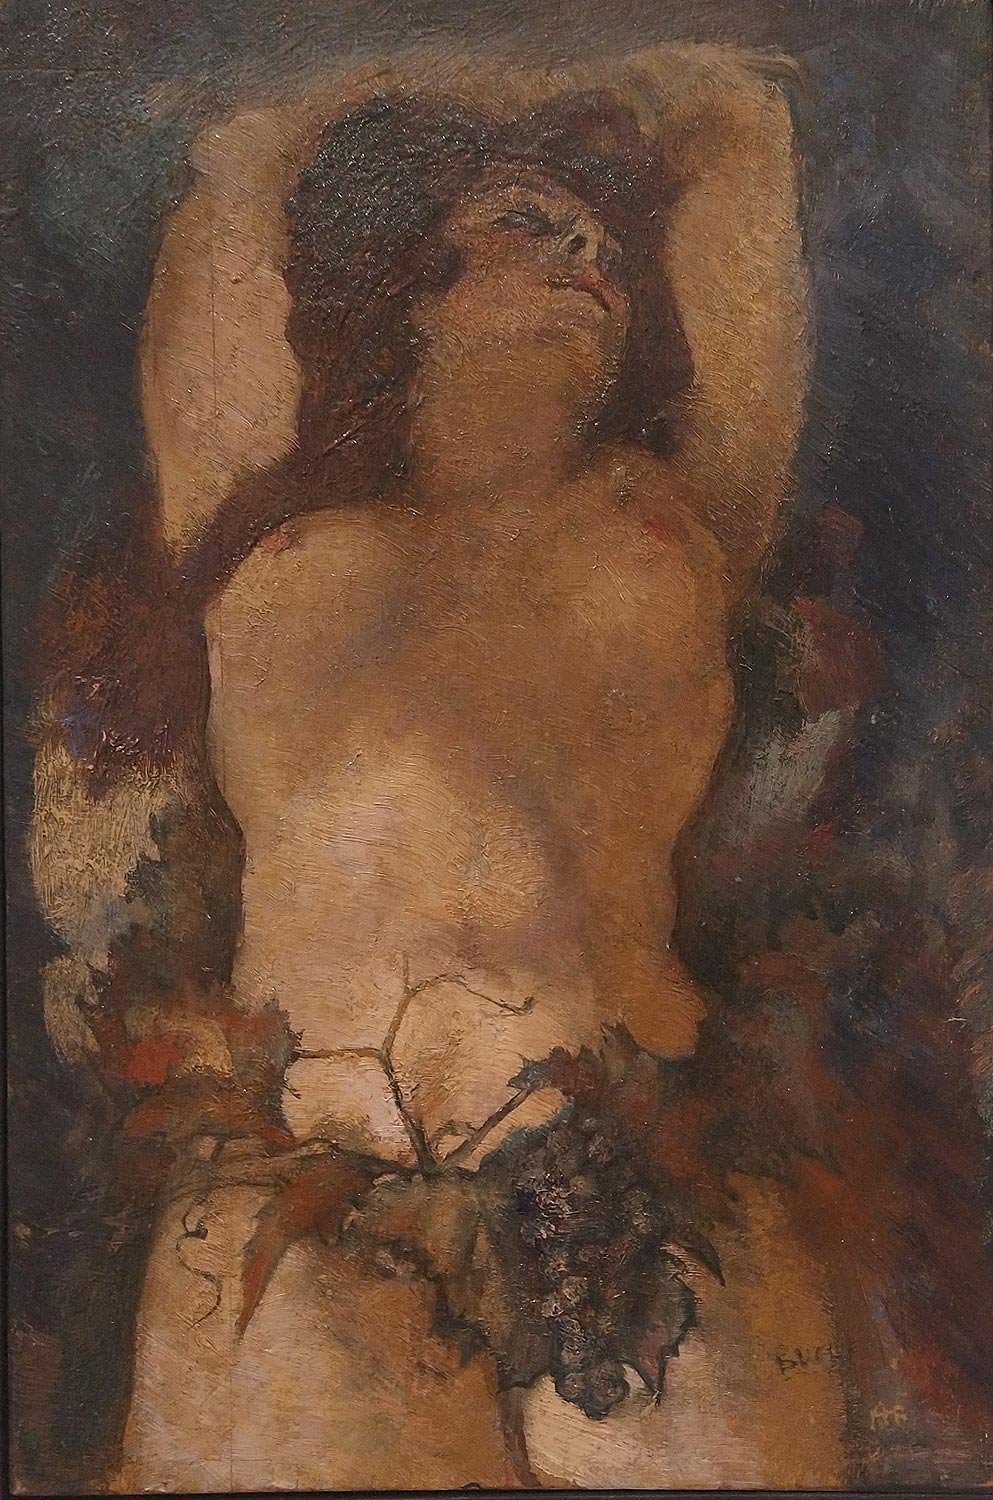 Anselmo Bucci, Baccante (1921; olio su tavola, 30 x 21 cm; Collezione privata)